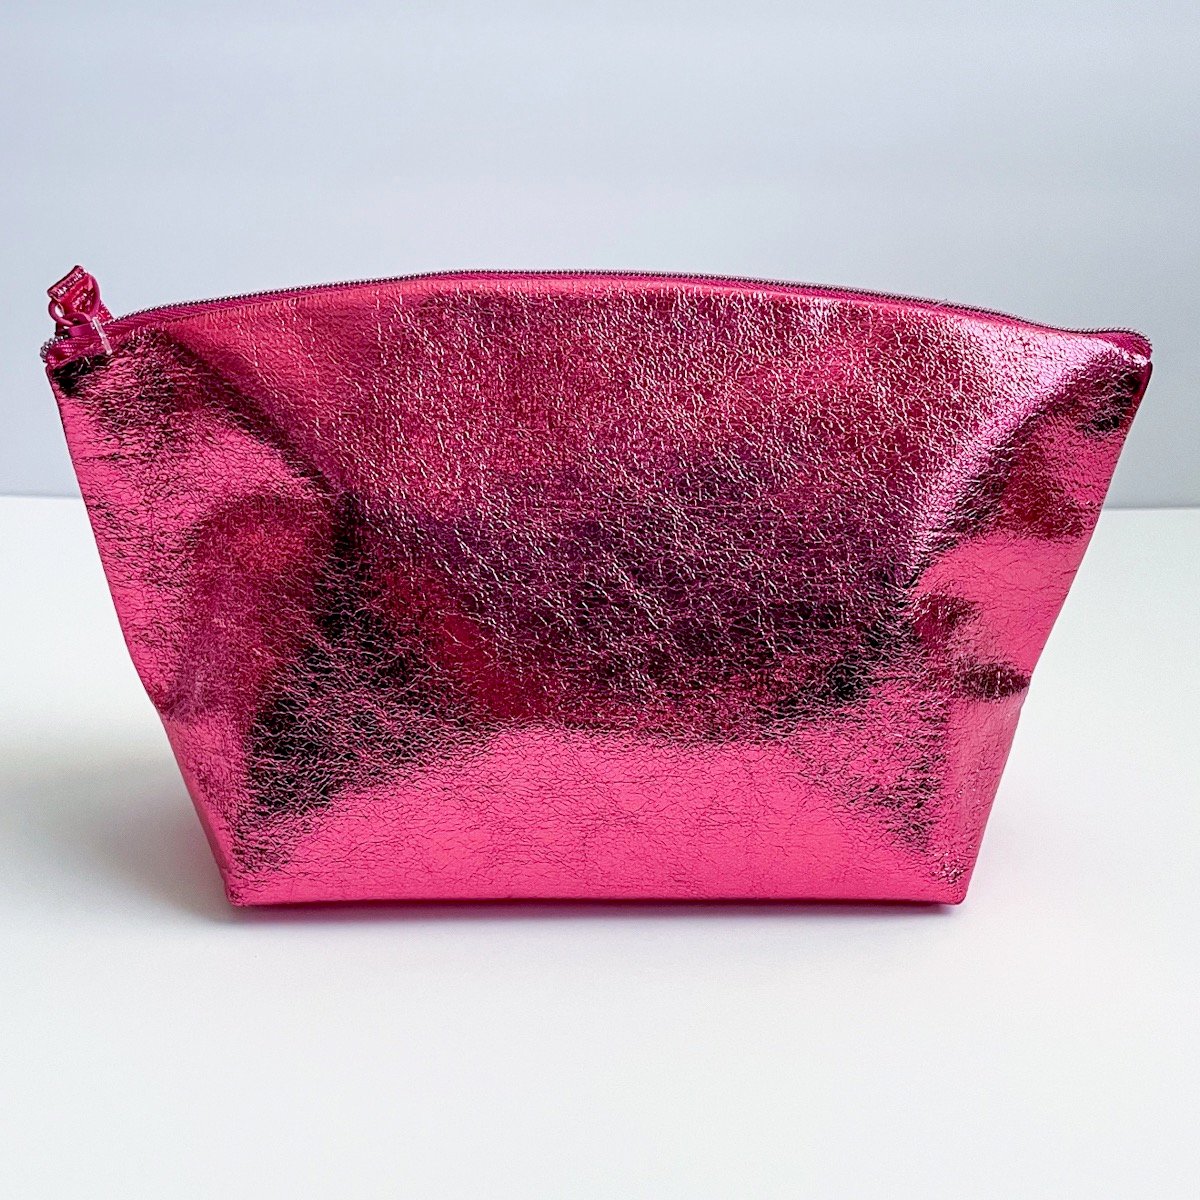 metallic pink makeup bag, closed